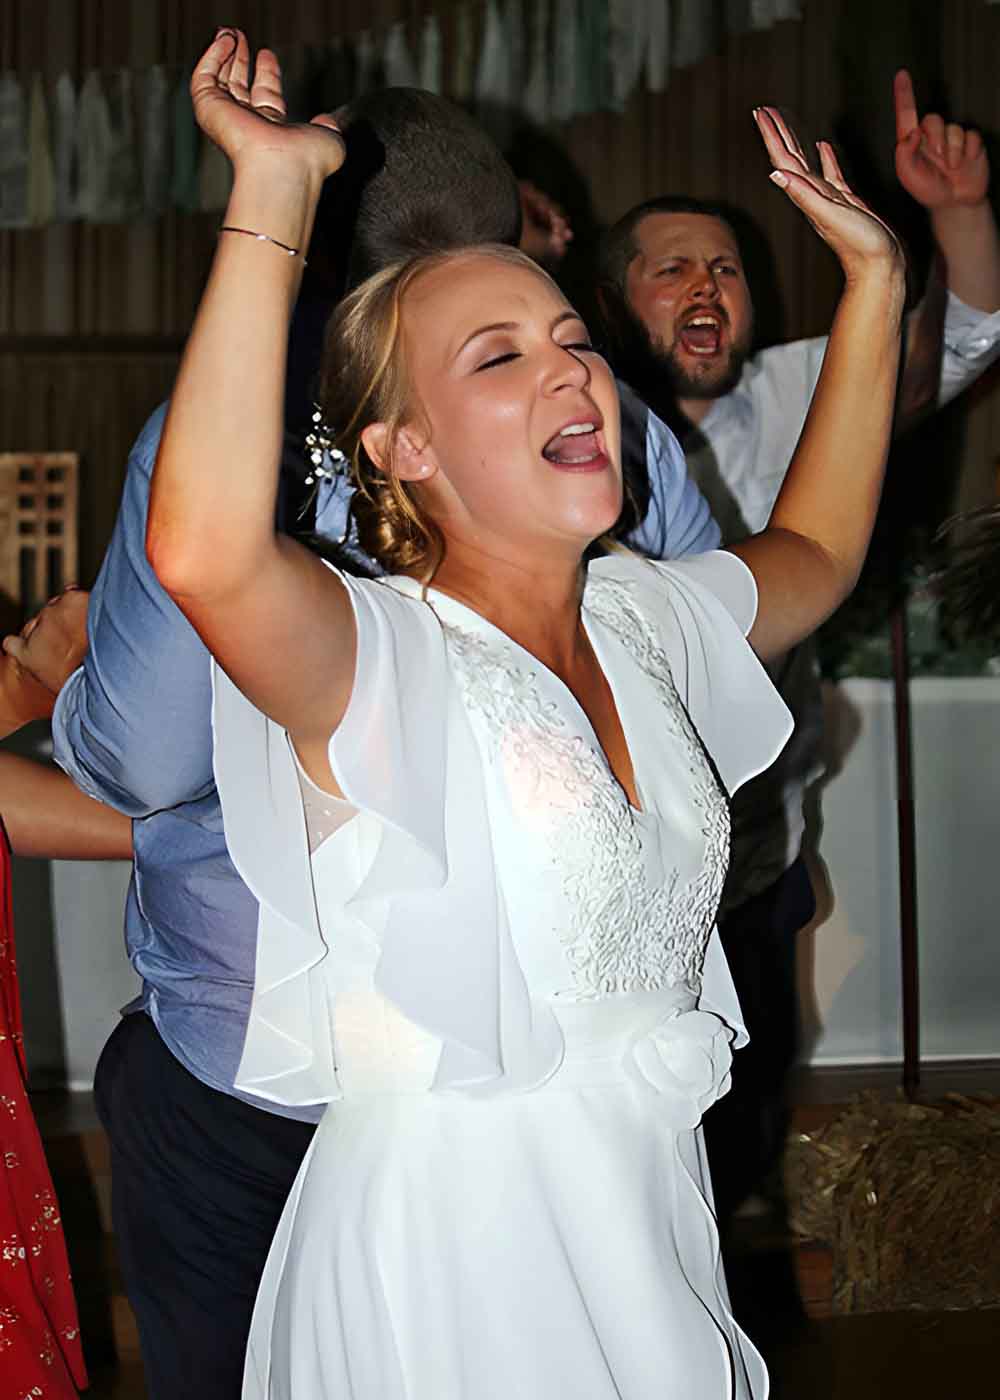 Bride dancing at wedding reception